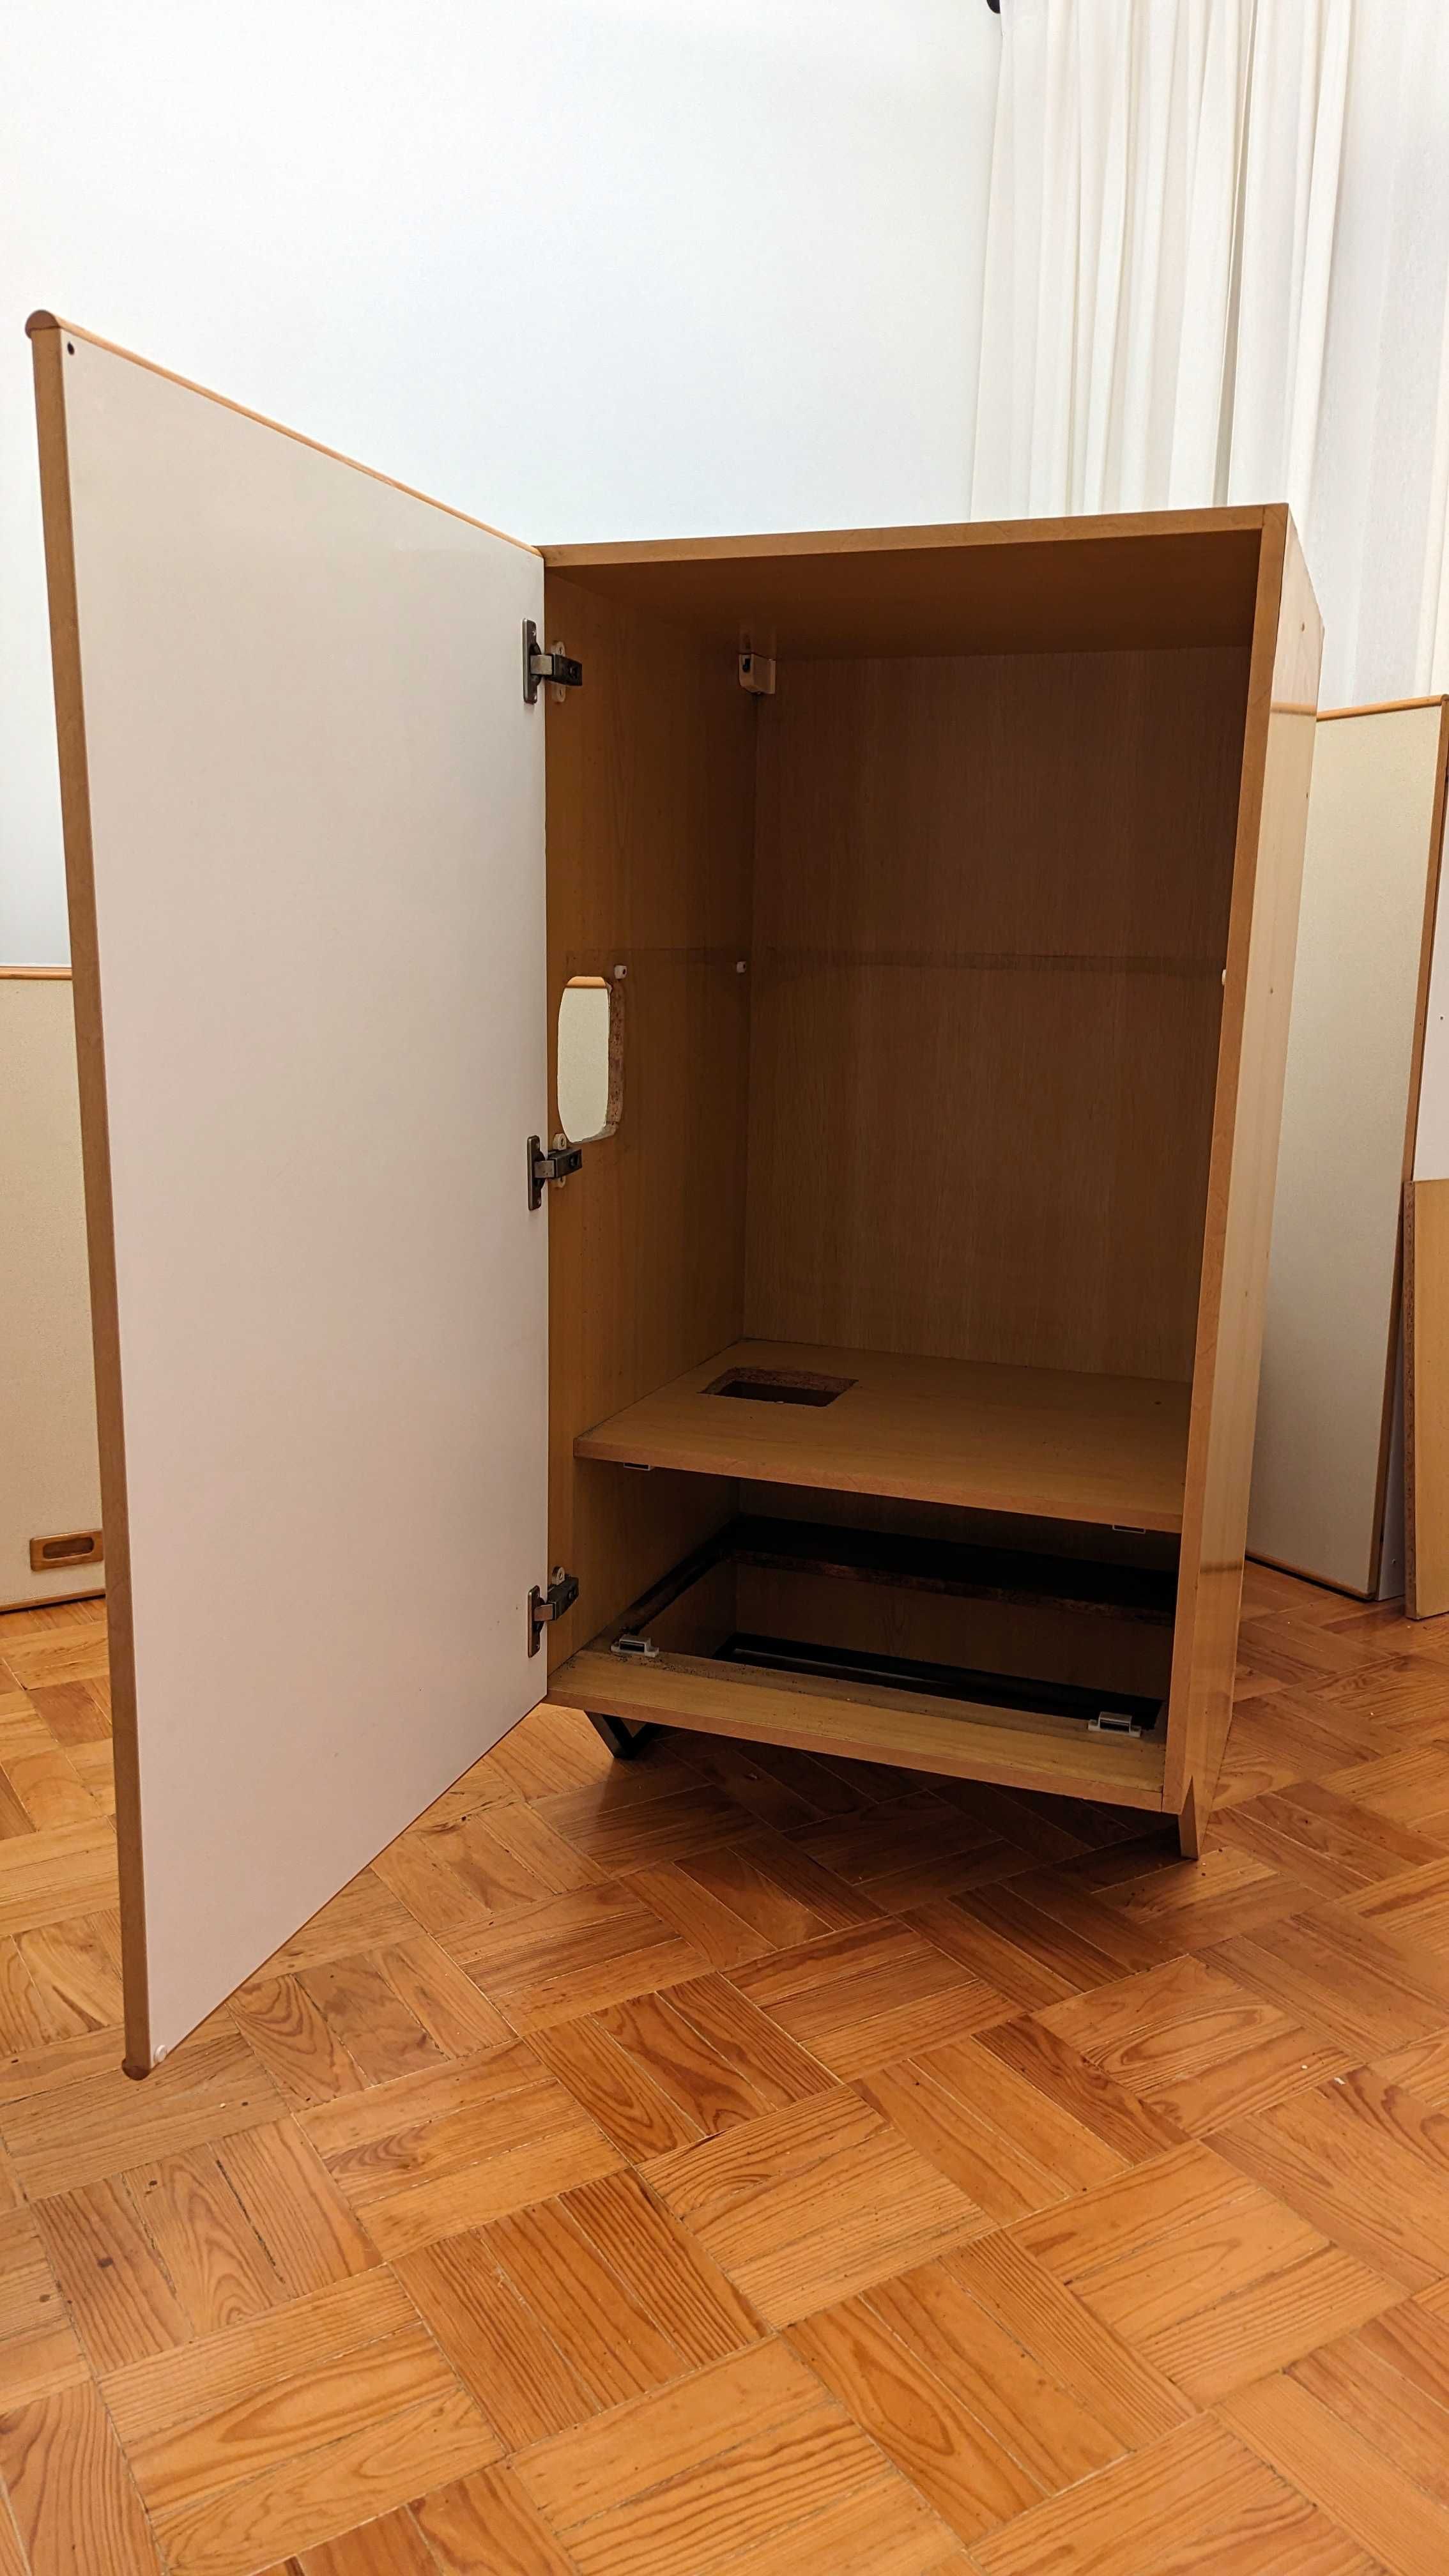 Móveis e Mobilia de Cozinha - Madeira (Faia), não é material IKEA